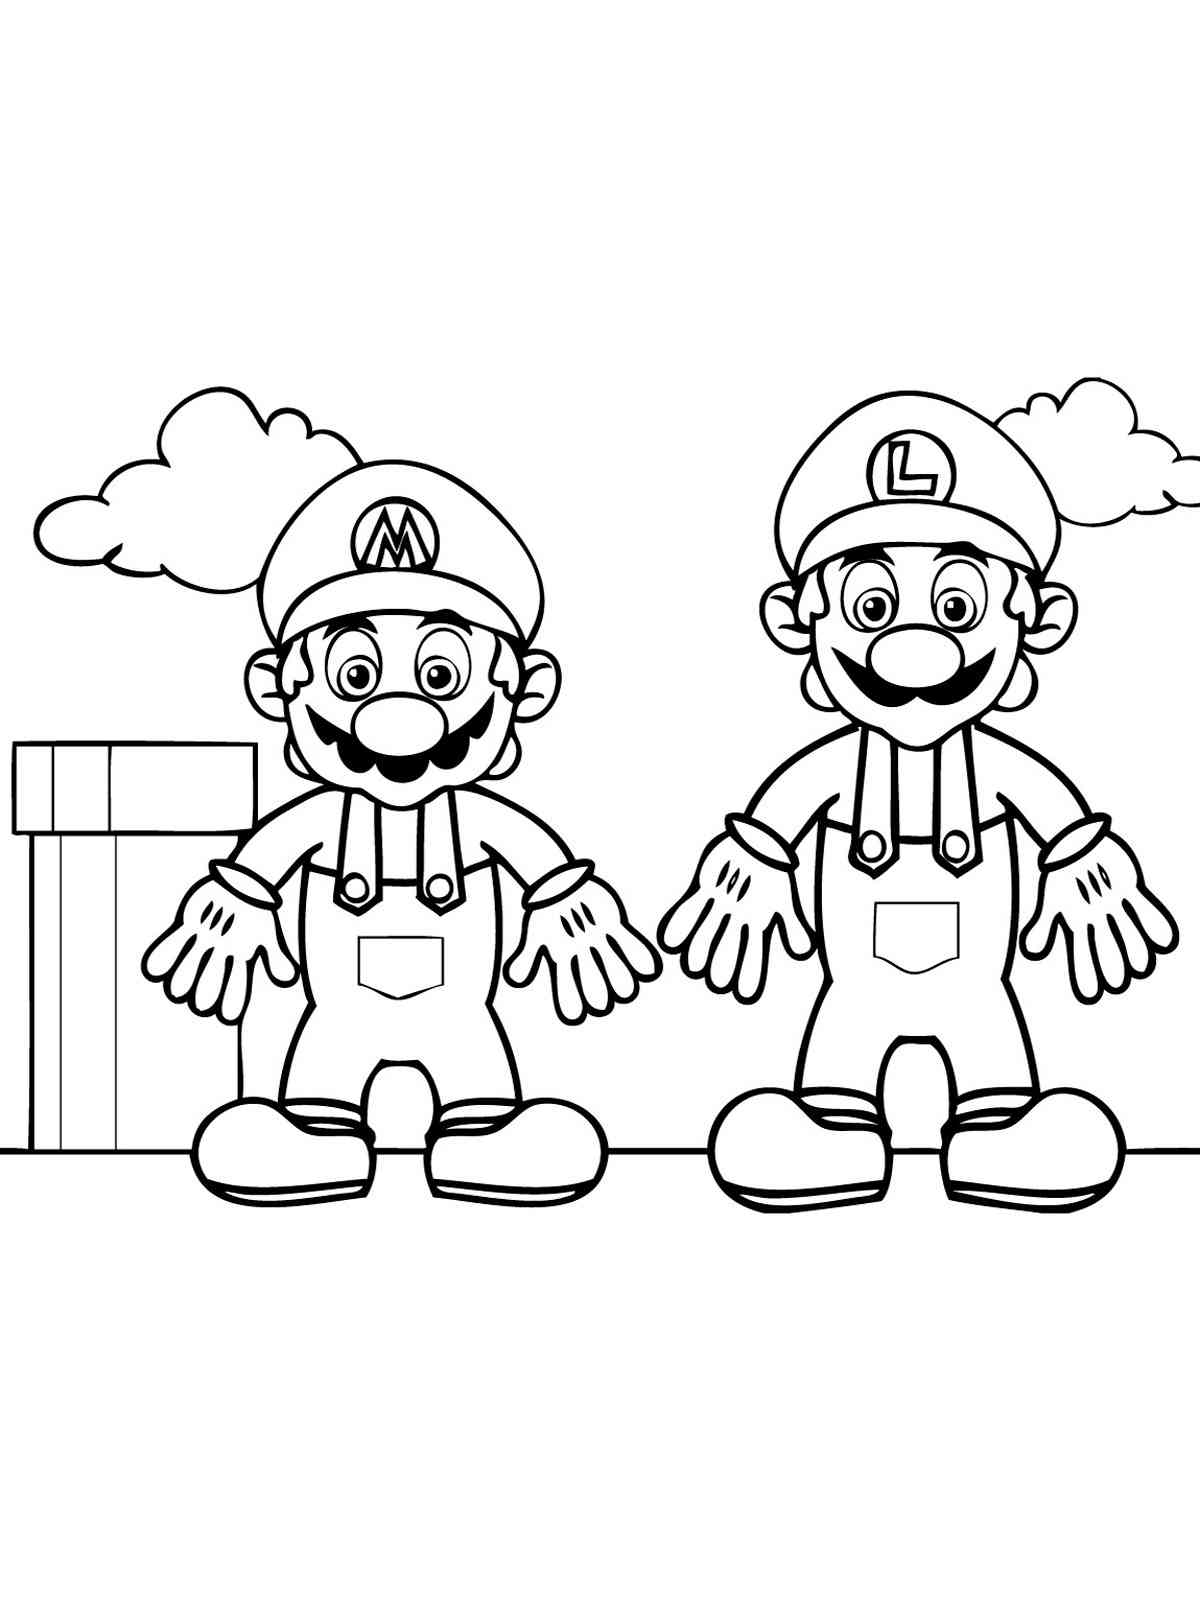 Luigi and Mario coloring page